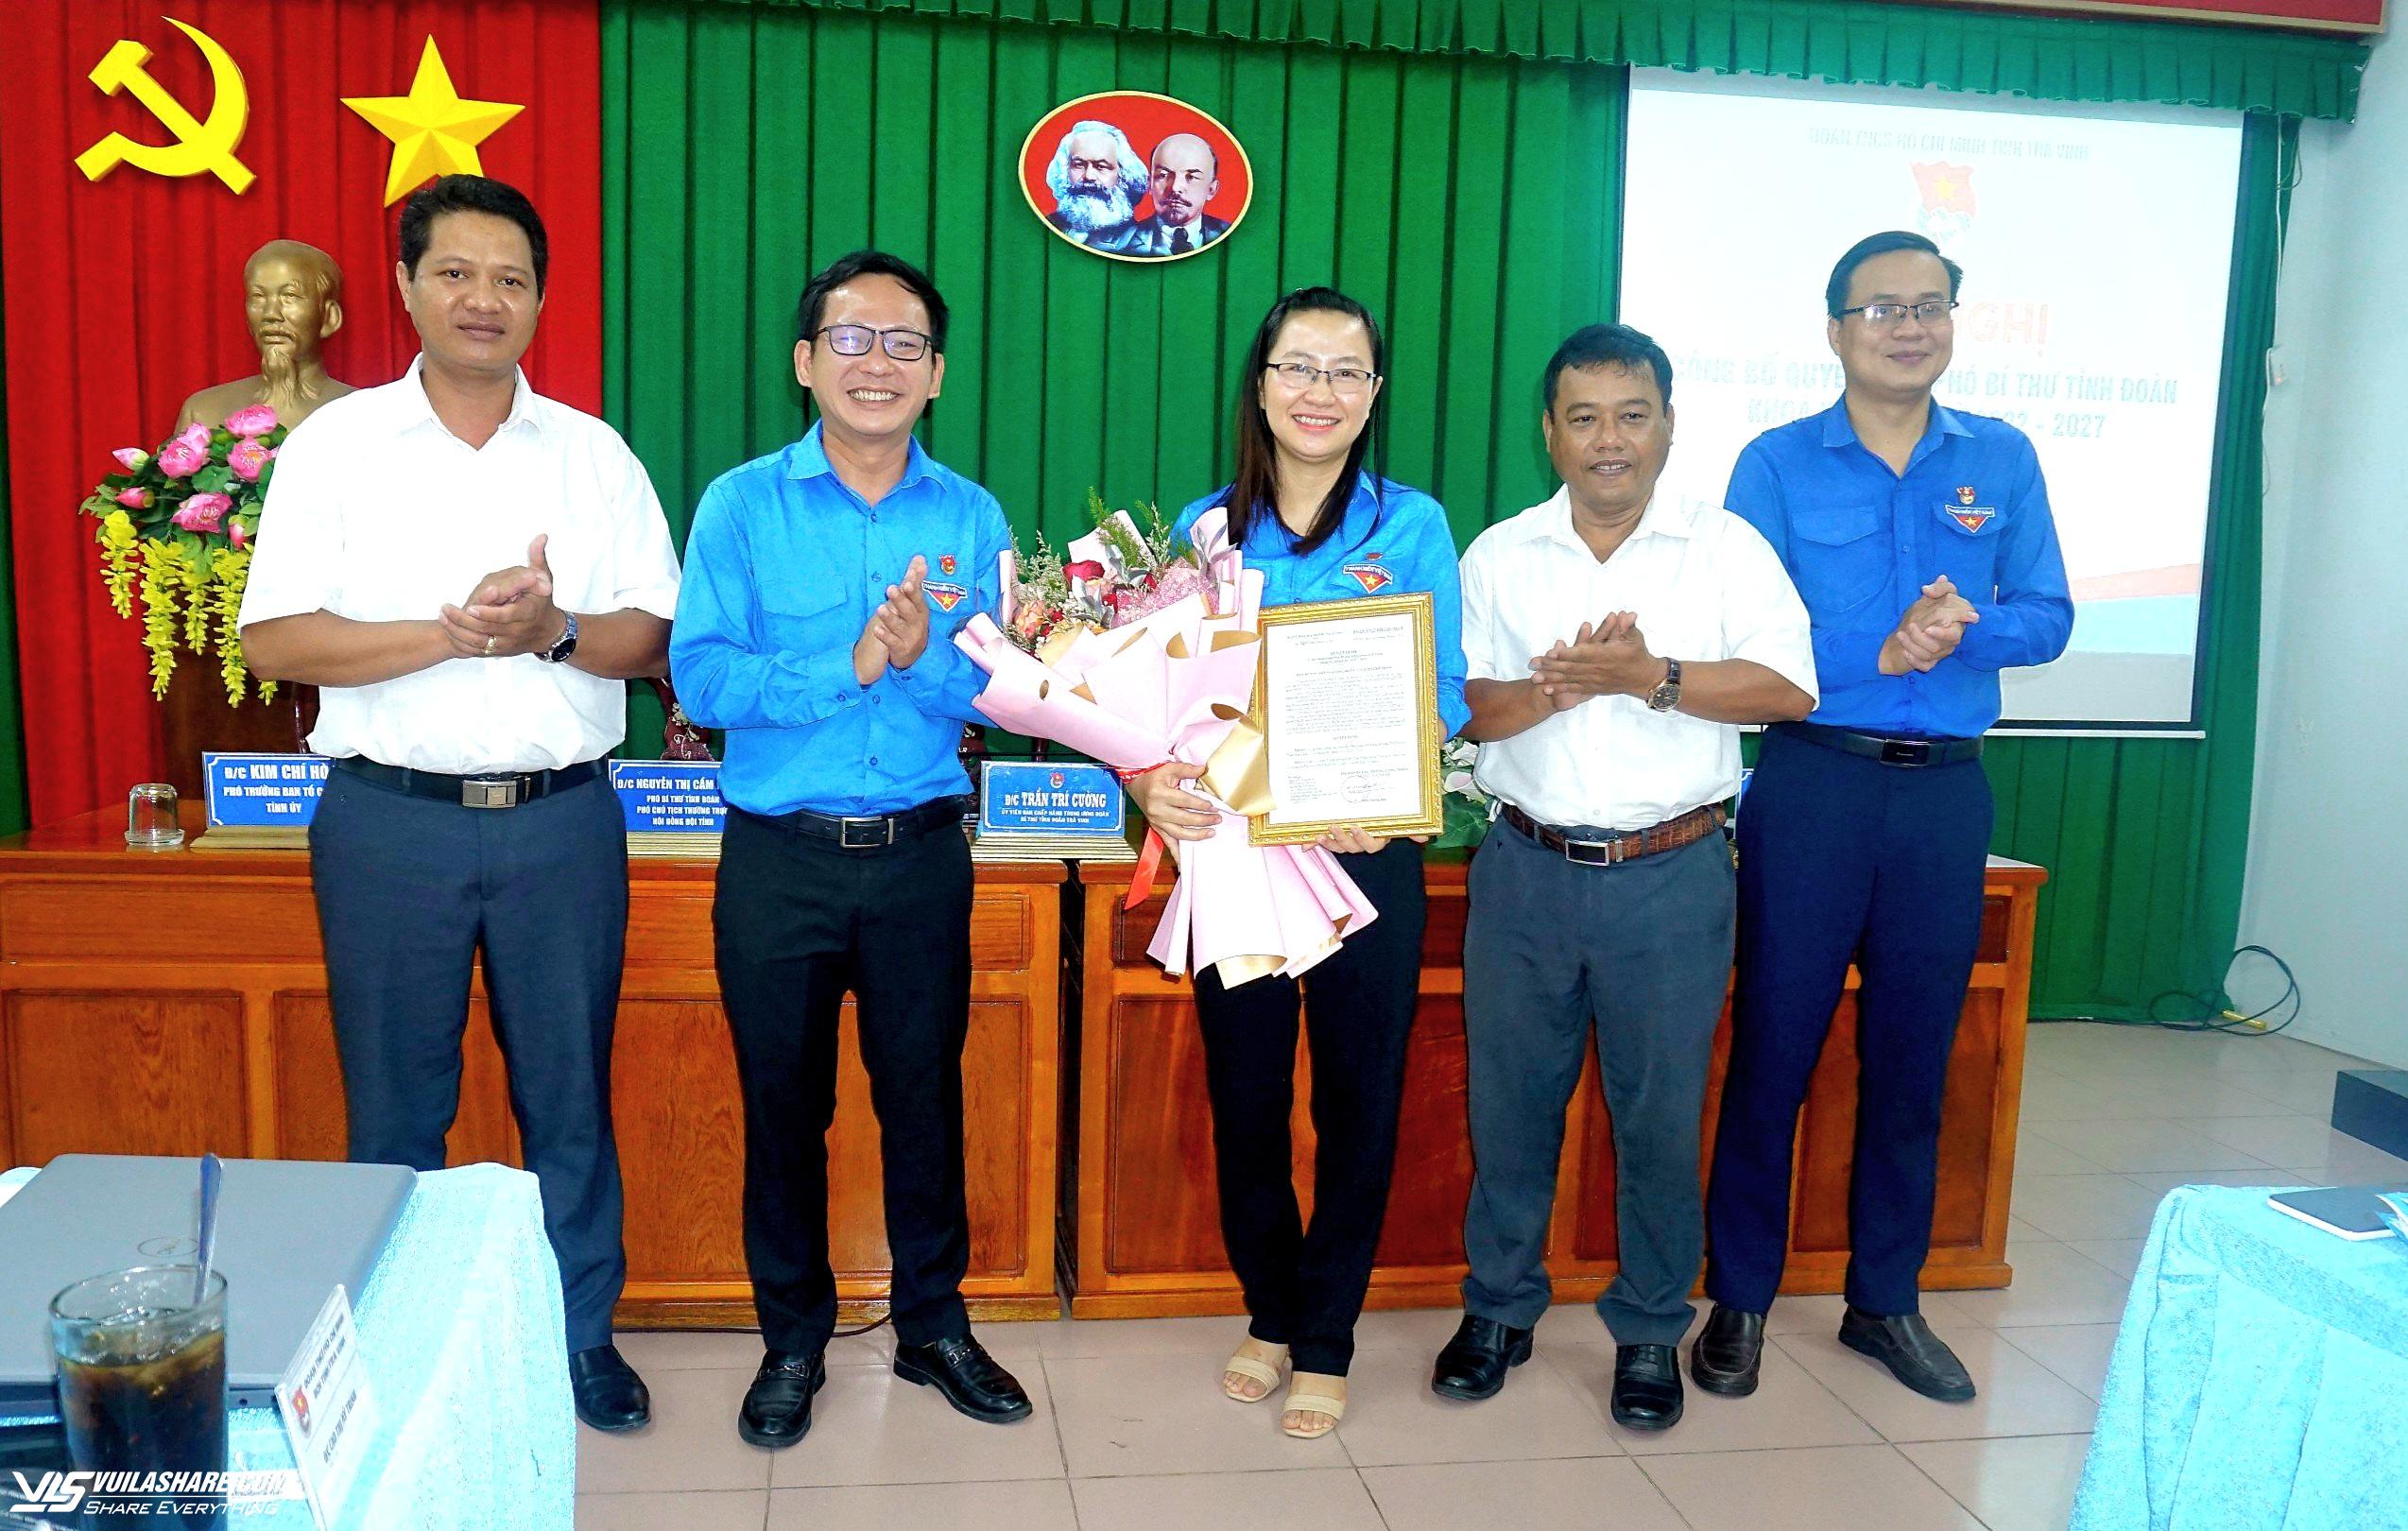 Chị Nguyễn Thị Cẩm Hương được bầu làm Phó bí thư Tỉnh đoàn Trà Vinh - Ảnh 1.